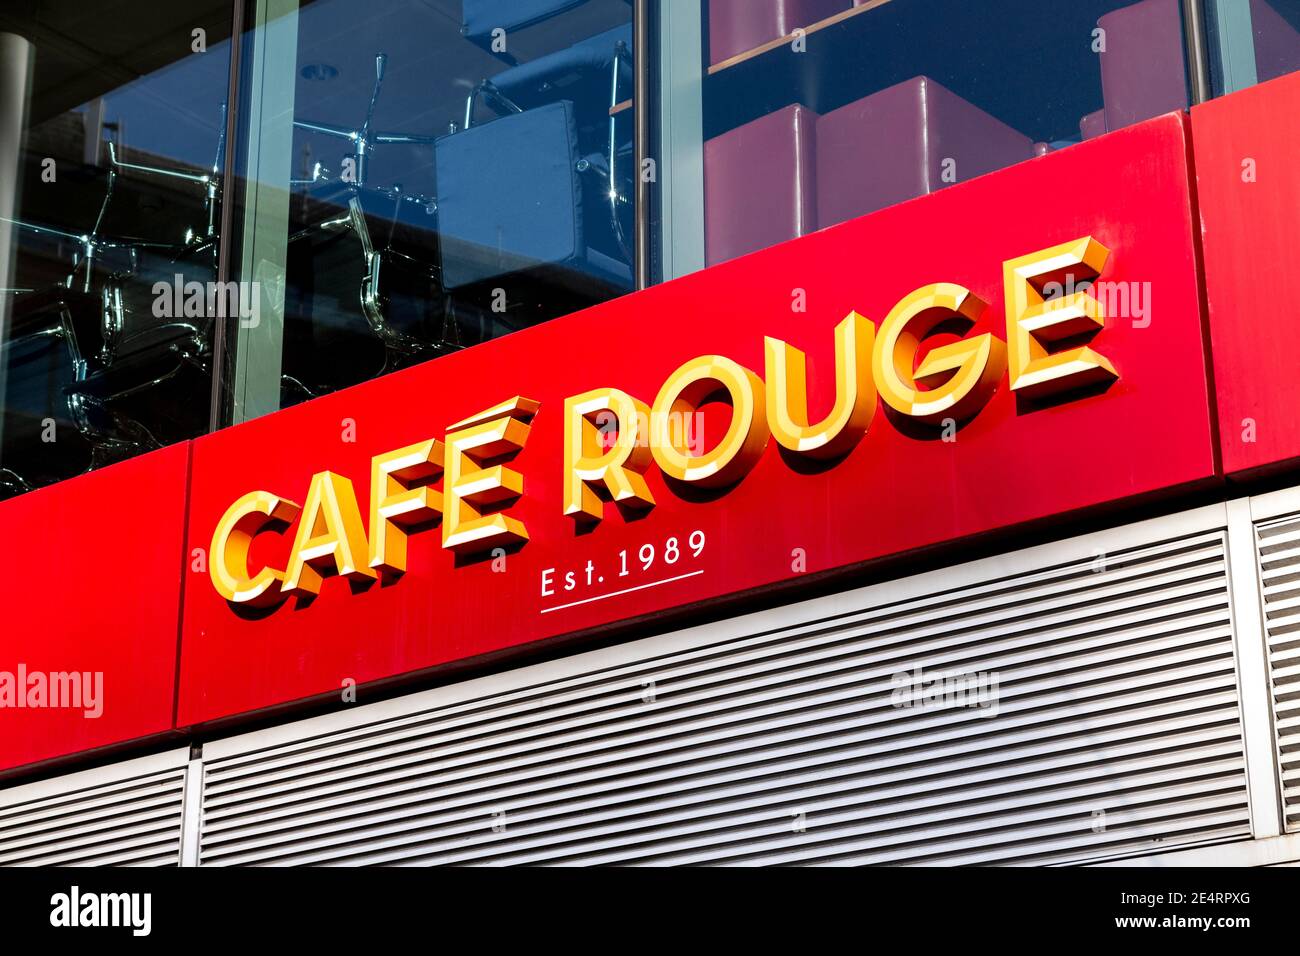 Sign for Cafe Rouge restaurant in St. Katharine Docks, London, UK Stock Photo